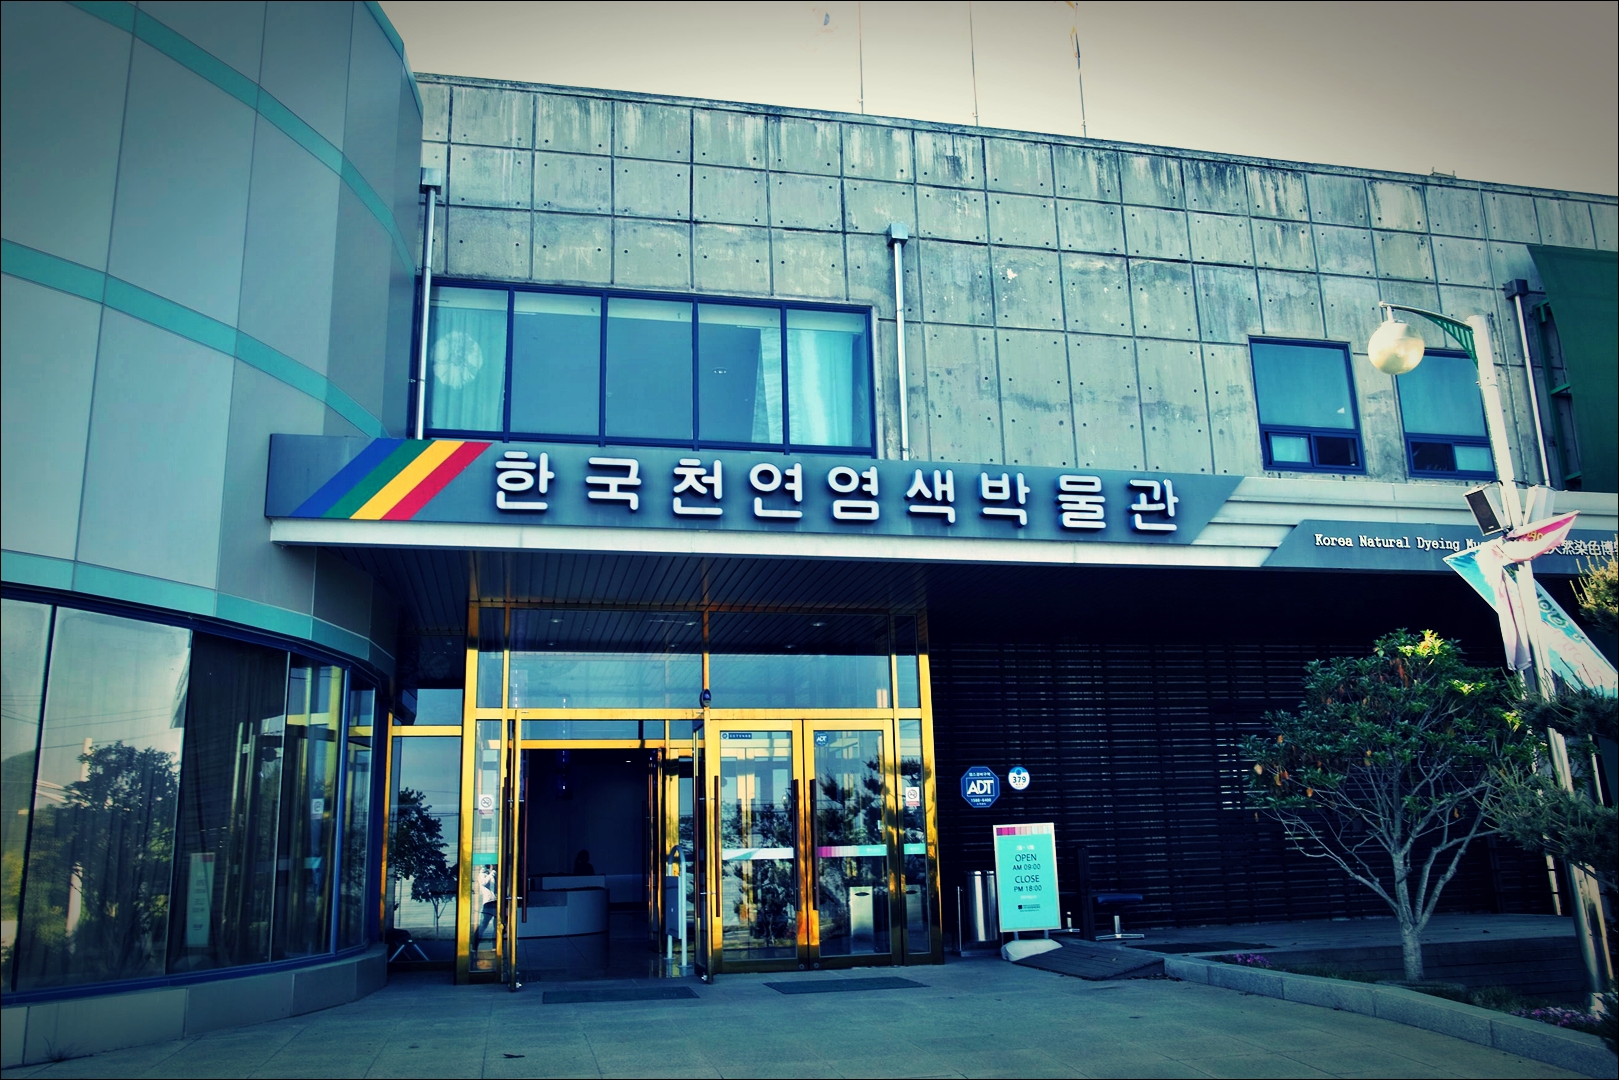 입구-'나주 한국 천연염색박물관 Museum of Natural dyeing Naju Korea'